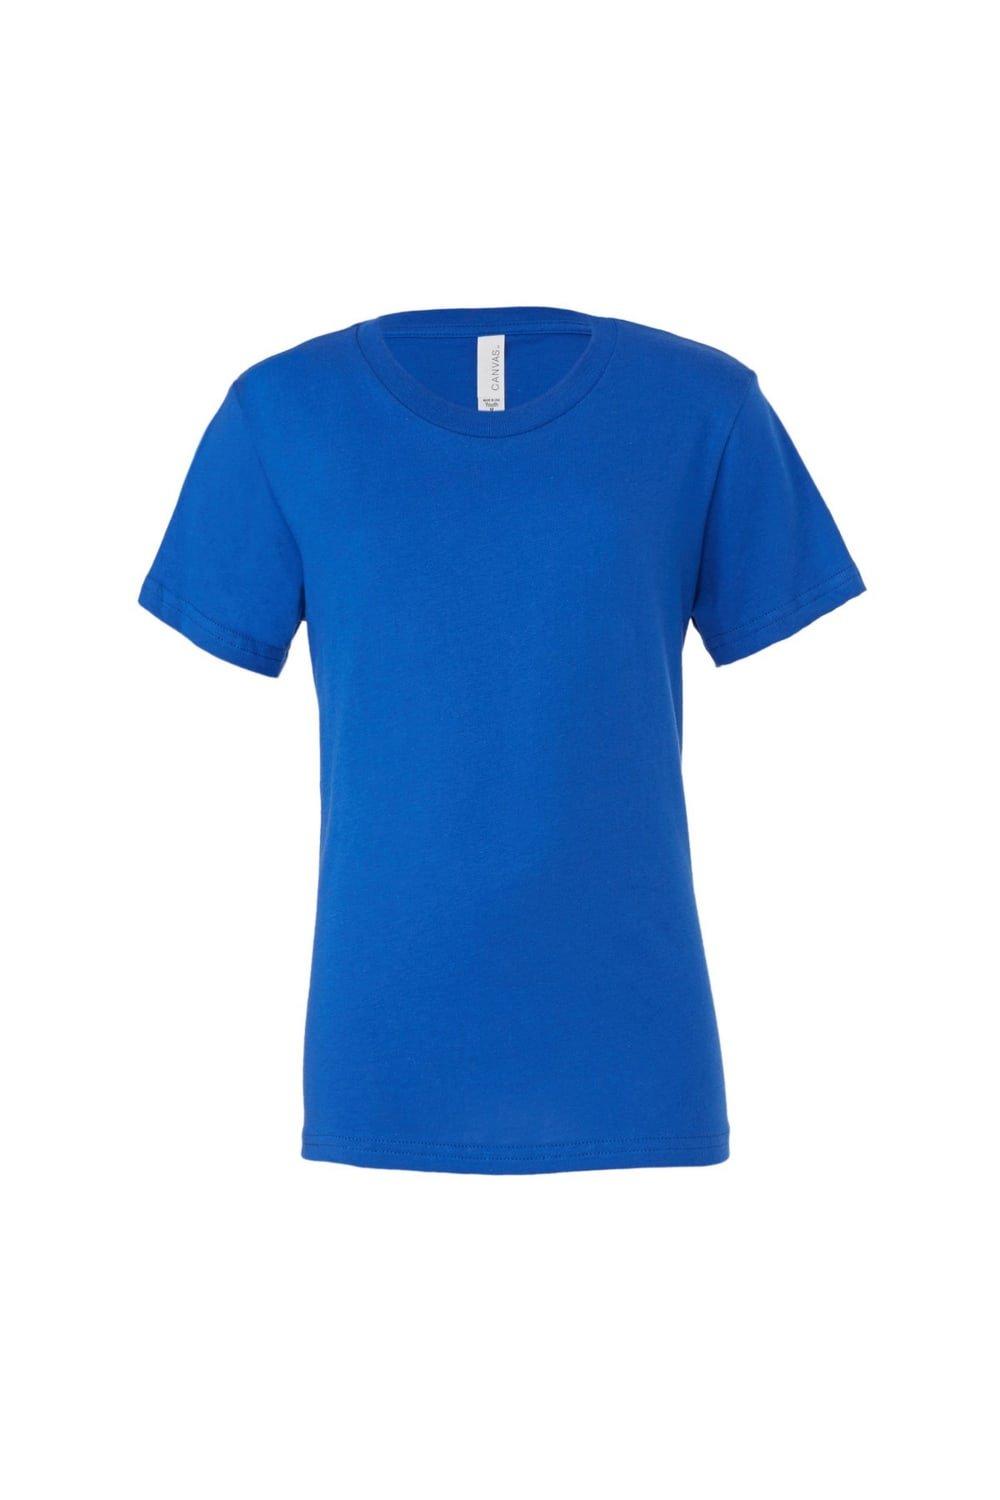 Молодежная футболка из джерси с короткими рукавами Bella + Canvas, синий розничная торговля бизнес процессы персонал ассортимент повышение квалификации